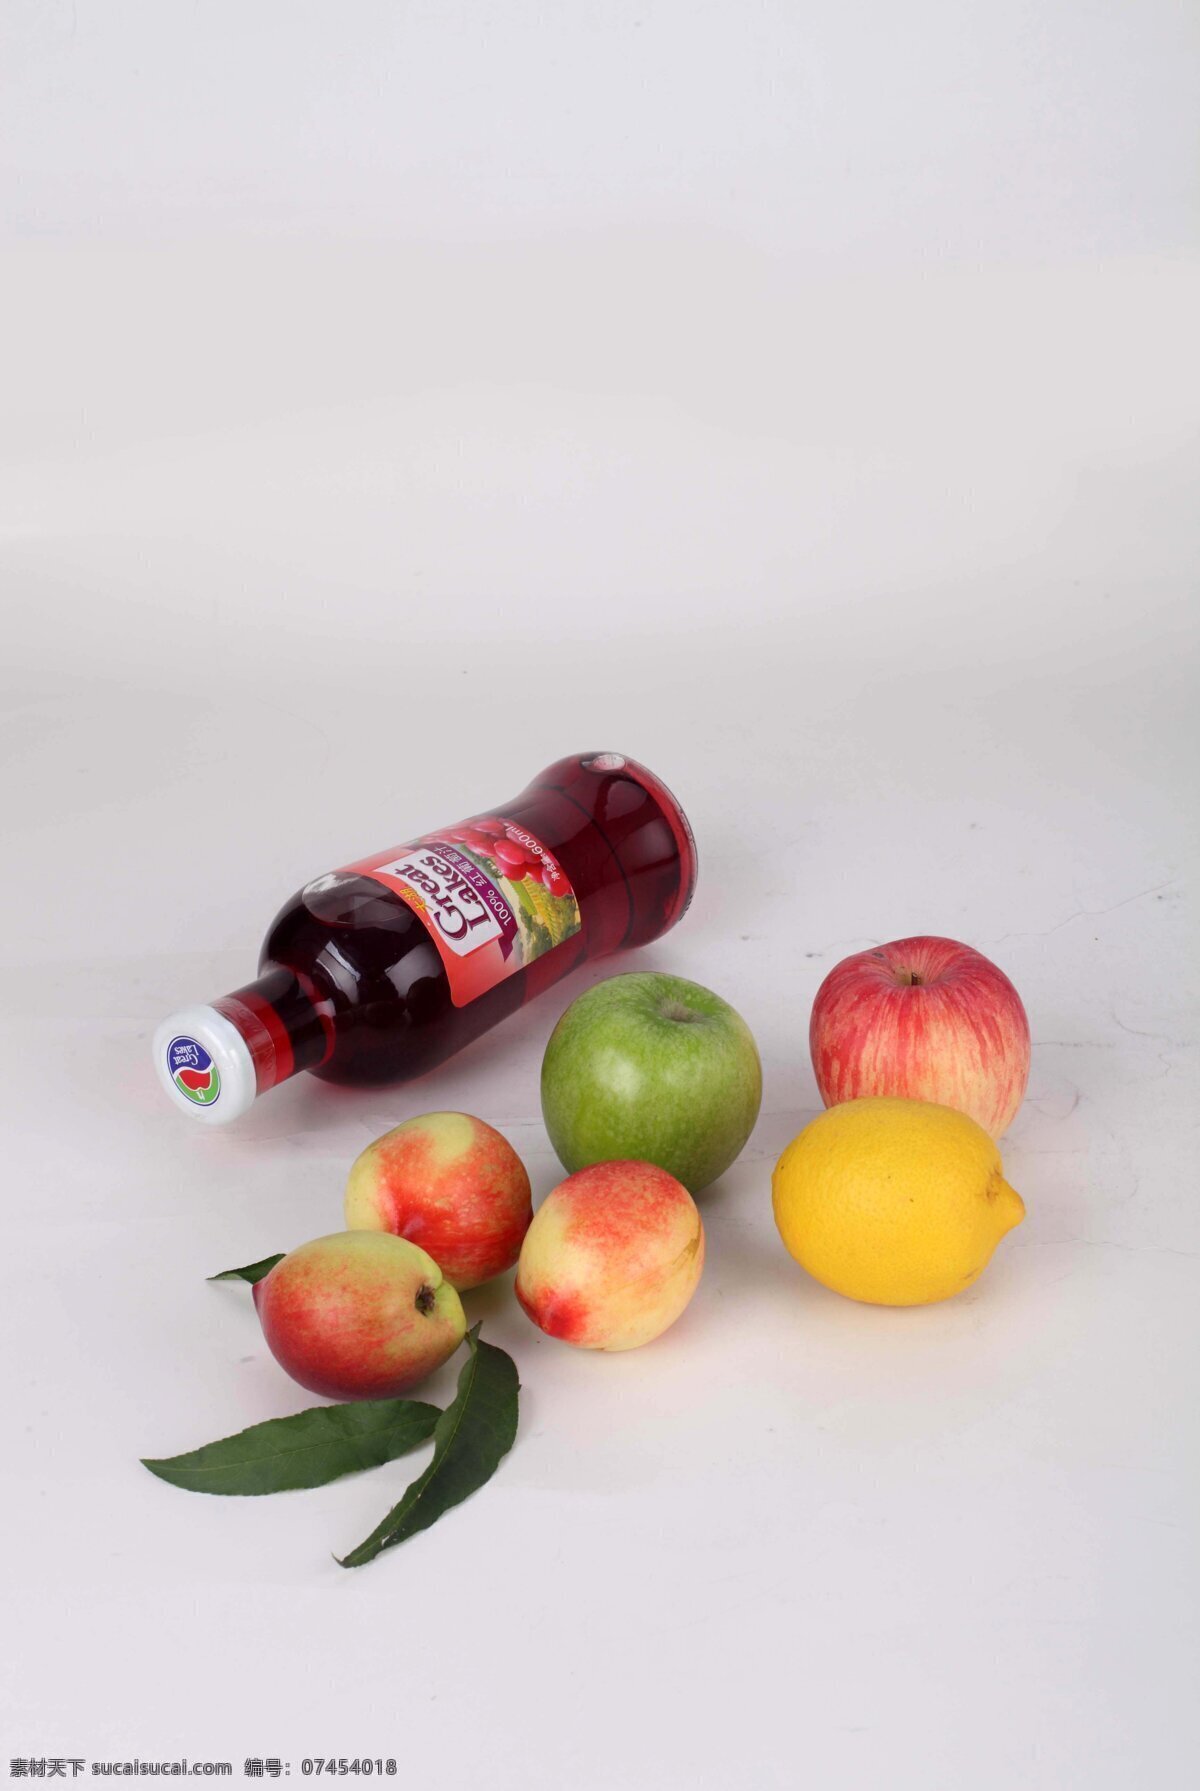 厨房生活 果汁 红苹果 柠檬 苹果 青苹果 设计素材 饮料 水果 桃子 叶子 葡萄汁 食材 生活素材 生活百科 装饰素材 室内设计